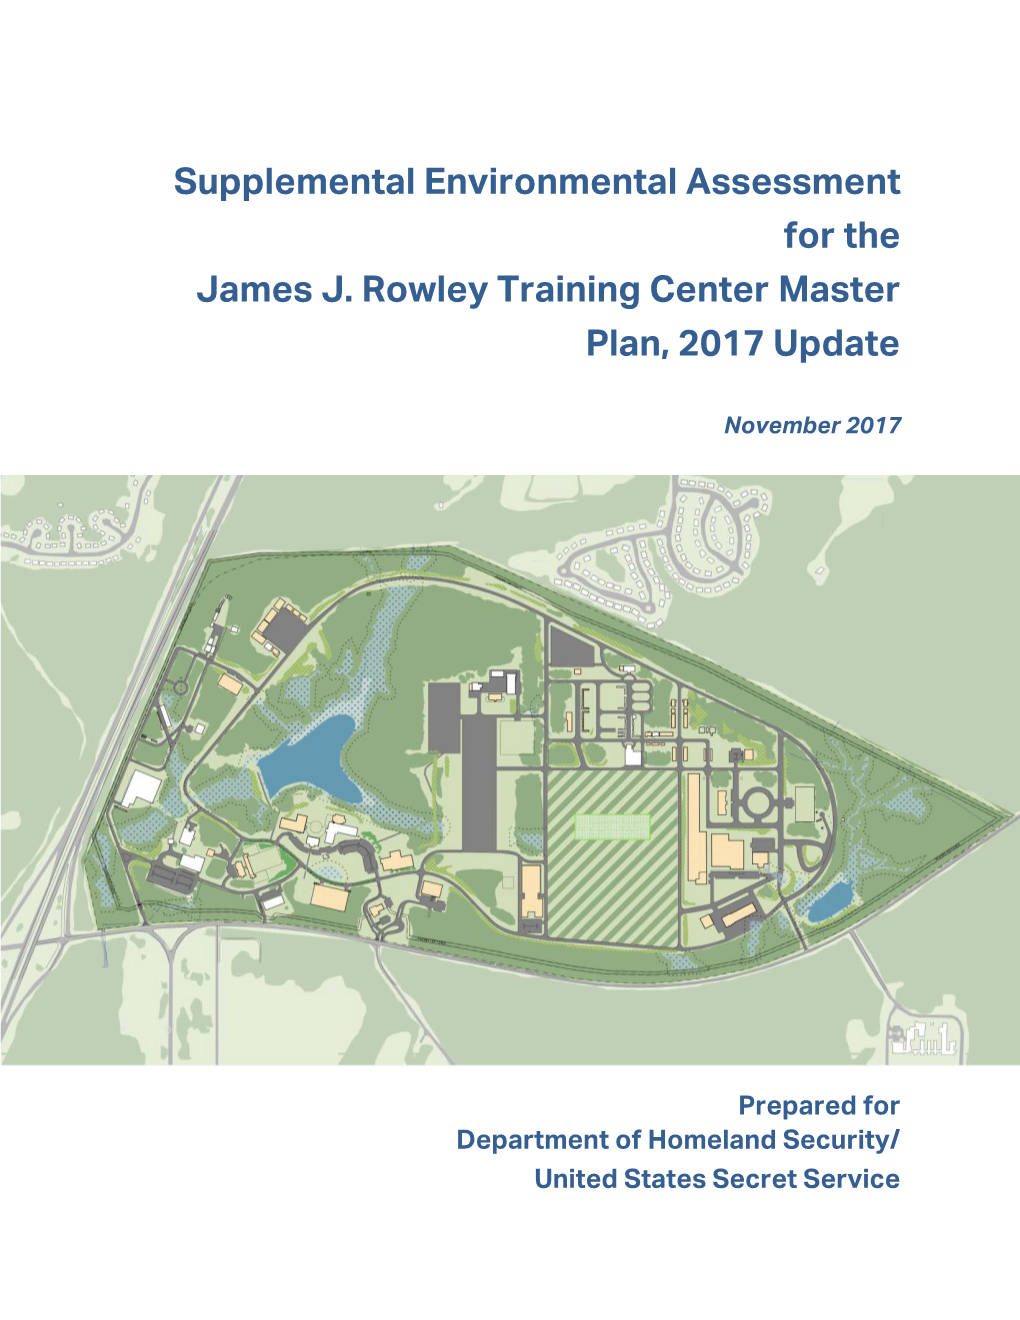 Supplemental Environmental Assessment for the James J